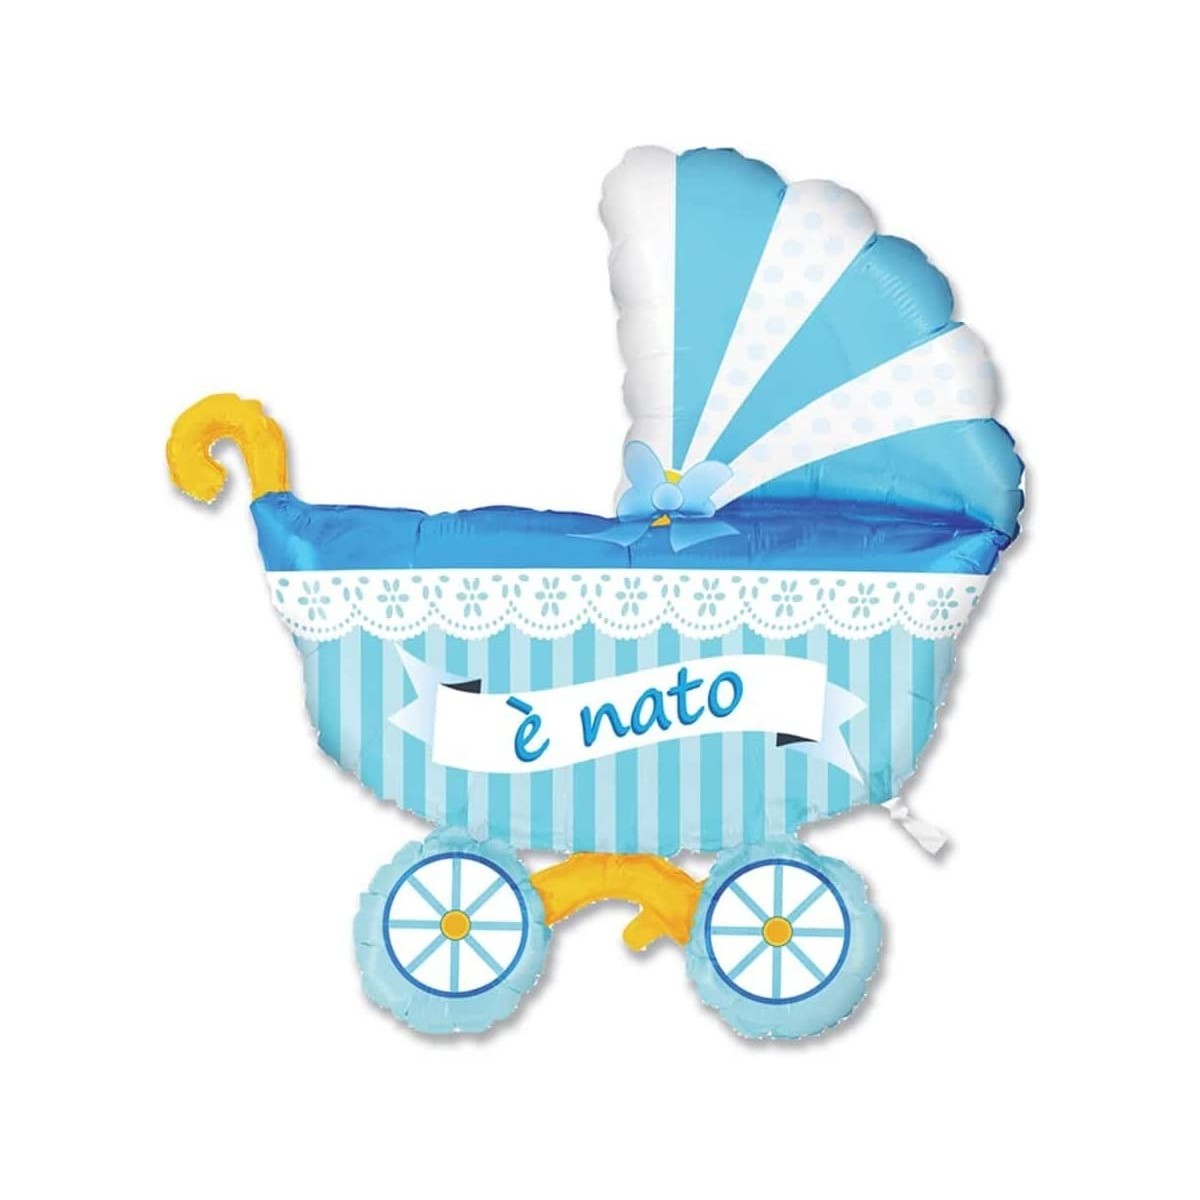 Palloncino in Mylar carrozzina celeste da 82 x 95 cm, per baby shower